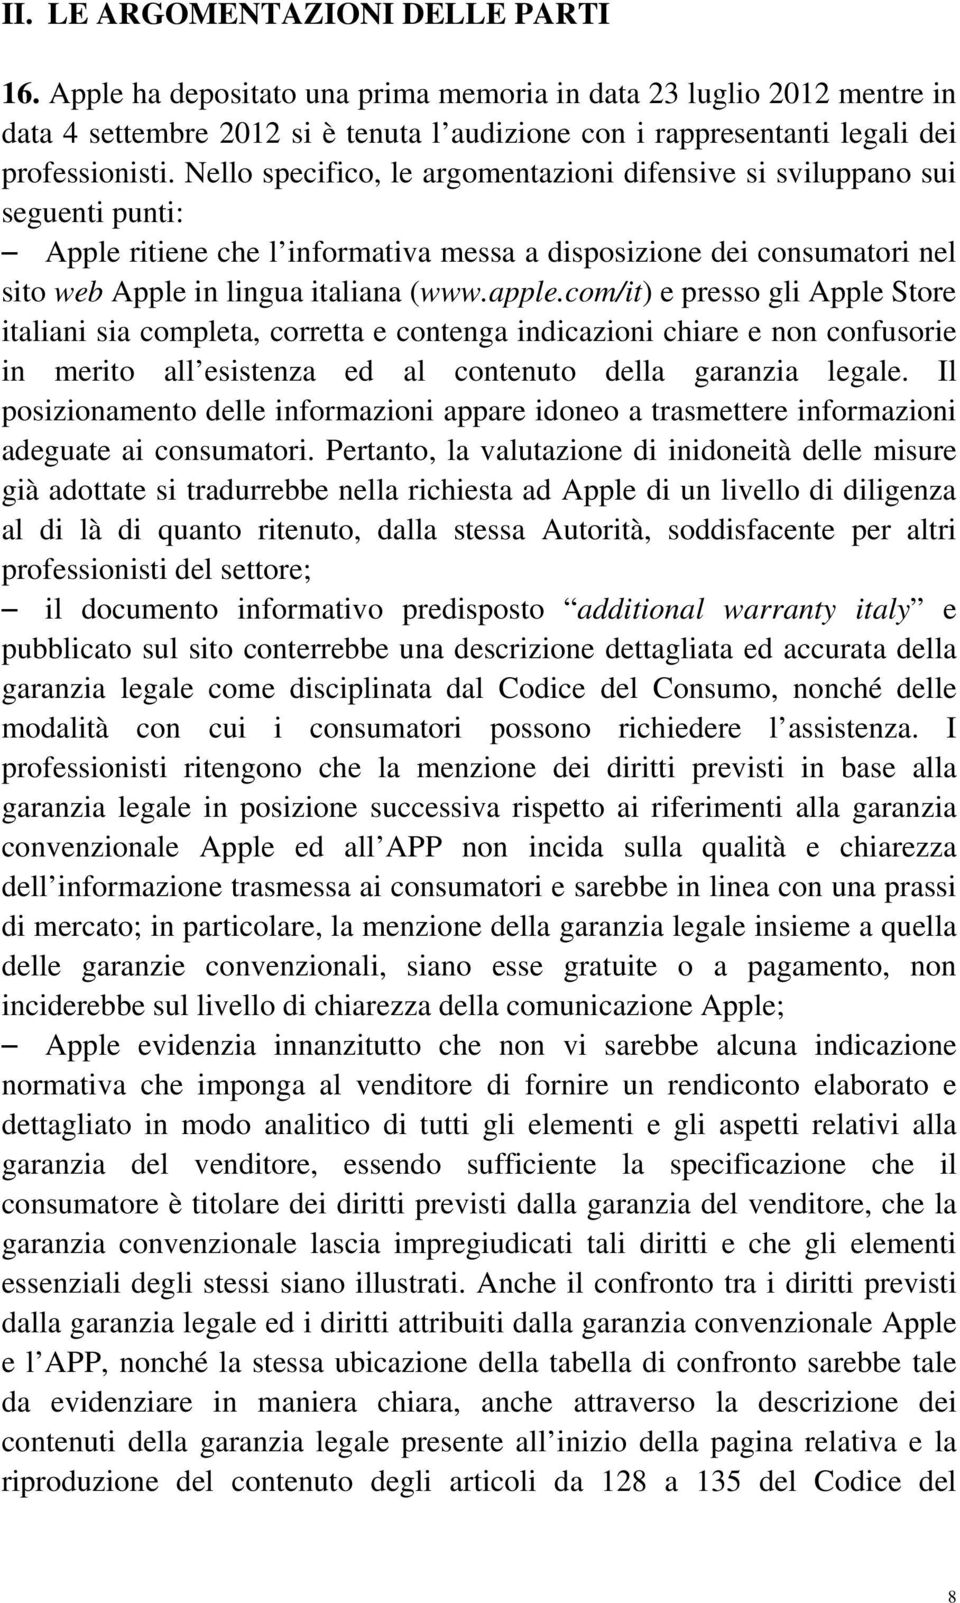 Nello specifico, le argomentazioni difensive si sviluppano sui seguenti punti: Apple ritiene che l informativa messa a disposizione dei consumatori nel sito web Apple in lingua italiana (www.apple.